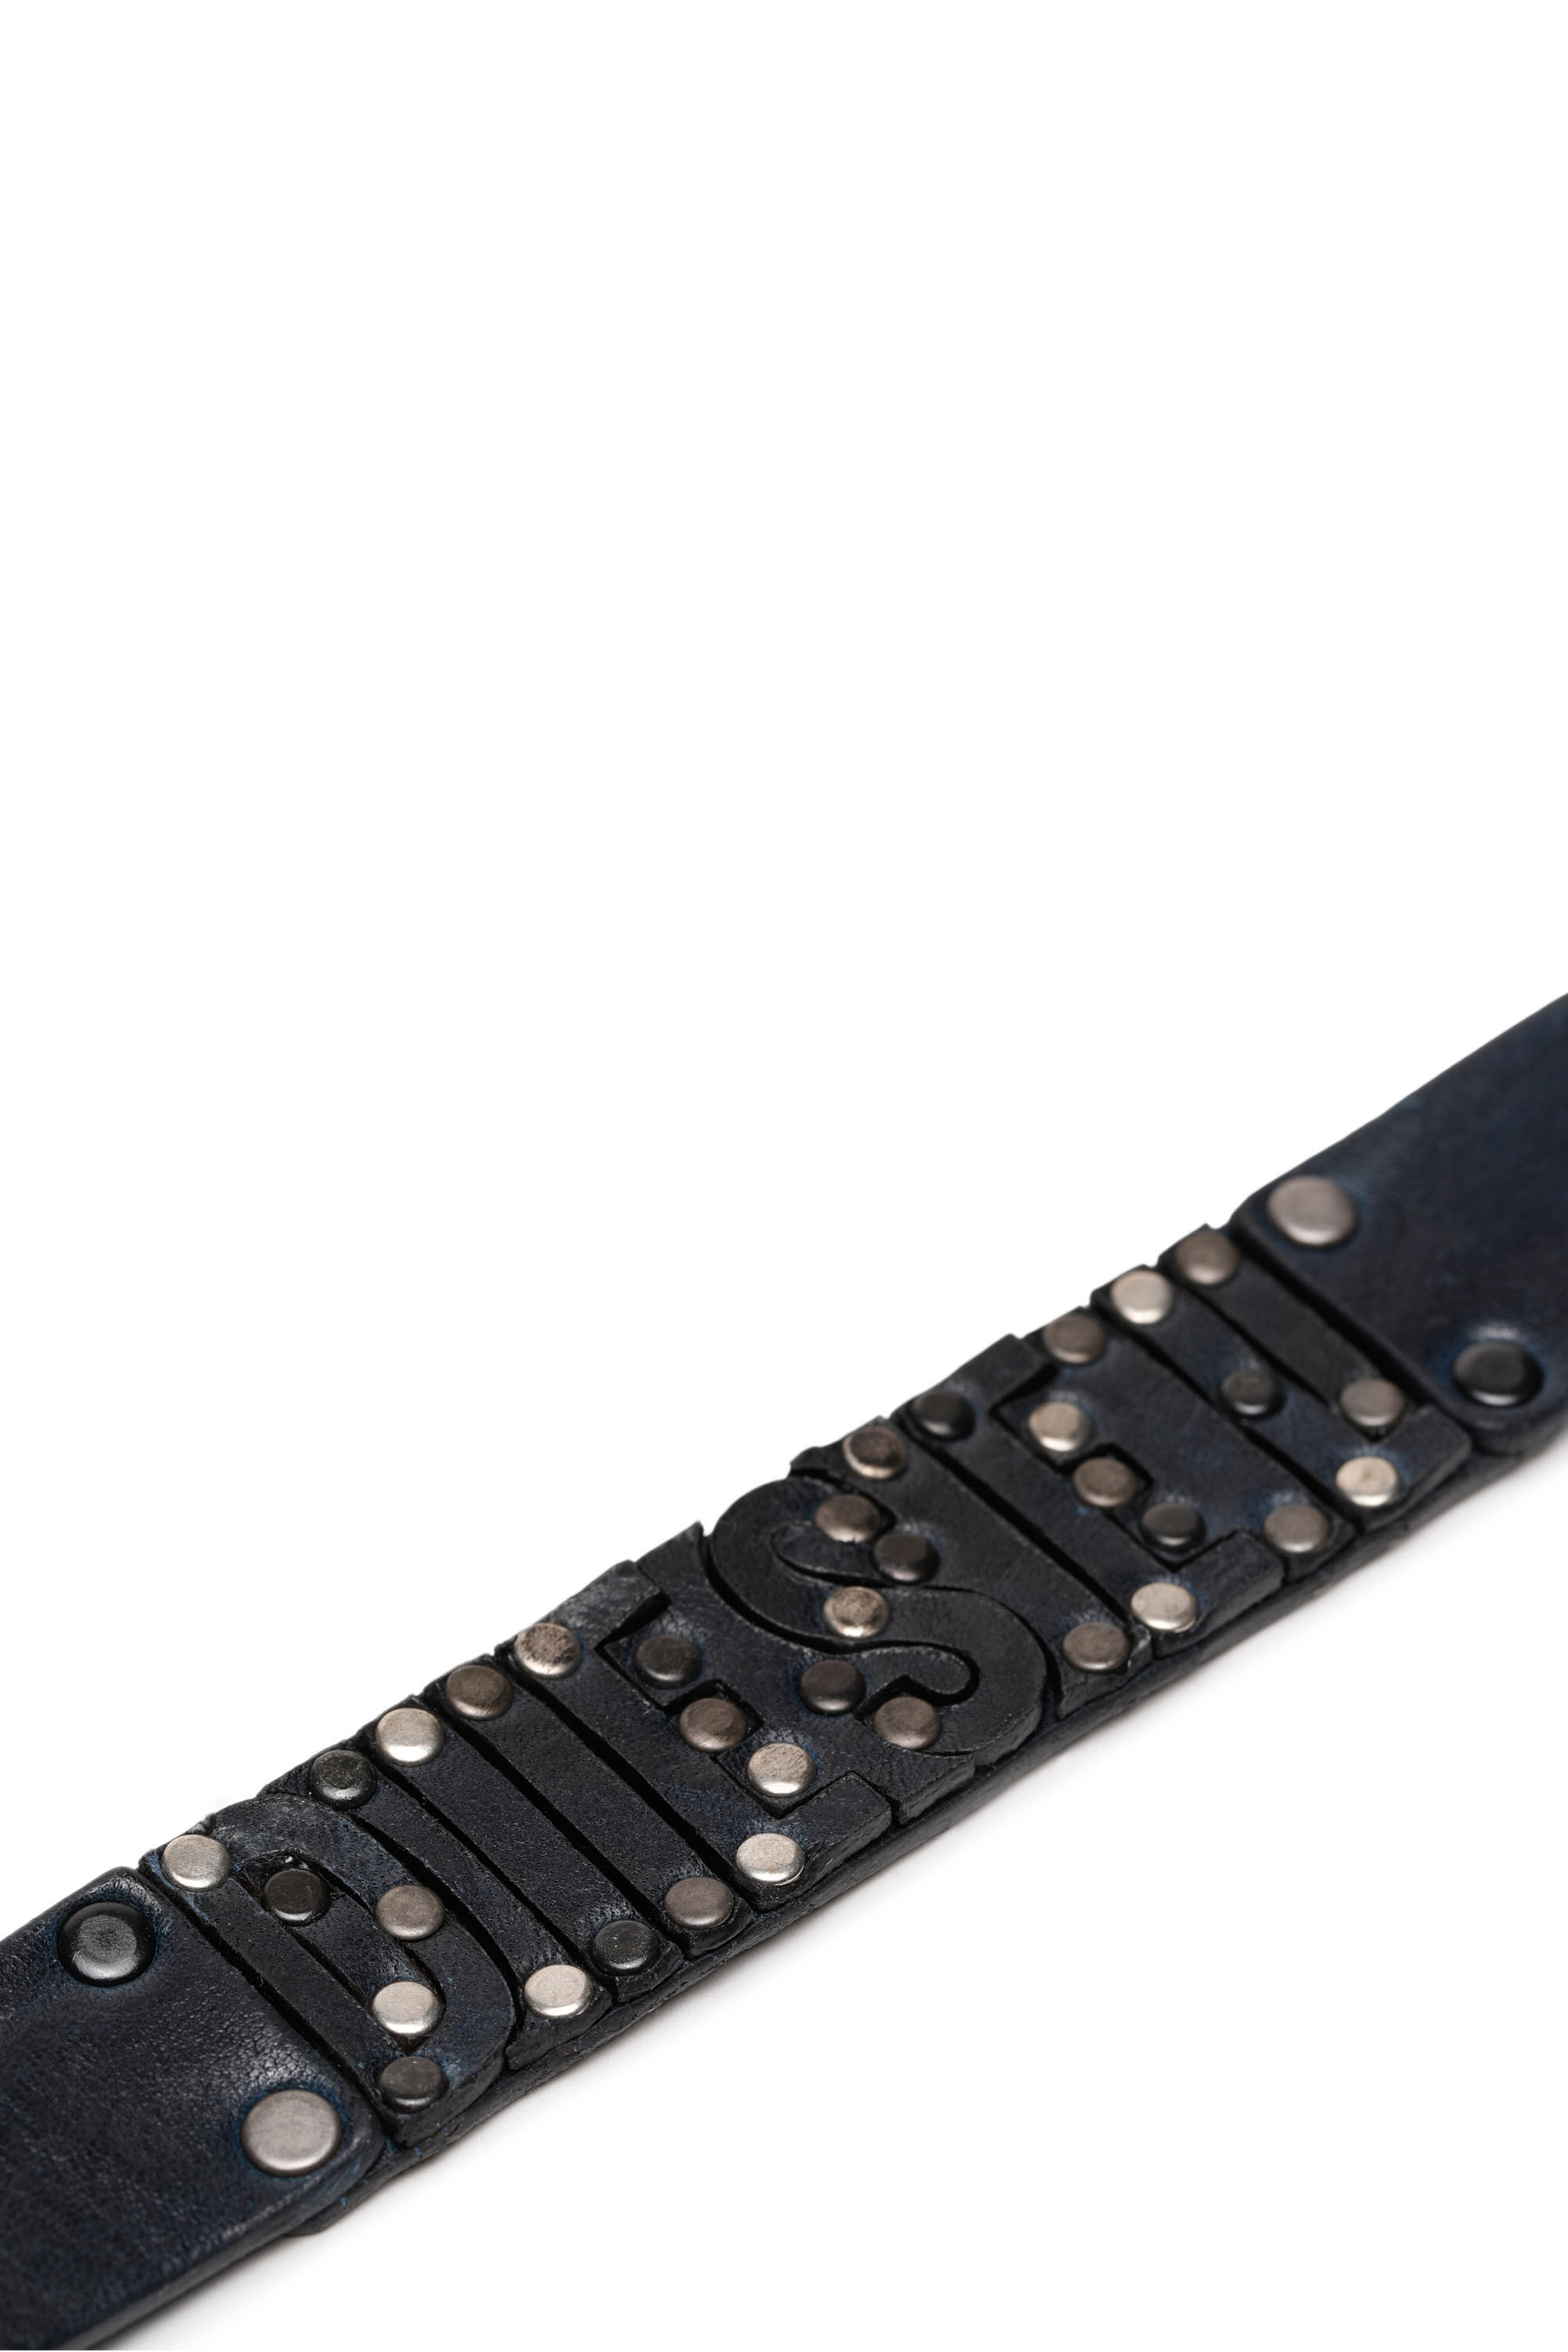 A-STELLAR Man: Leather cuff bracelet with inlaid logo | Diesel